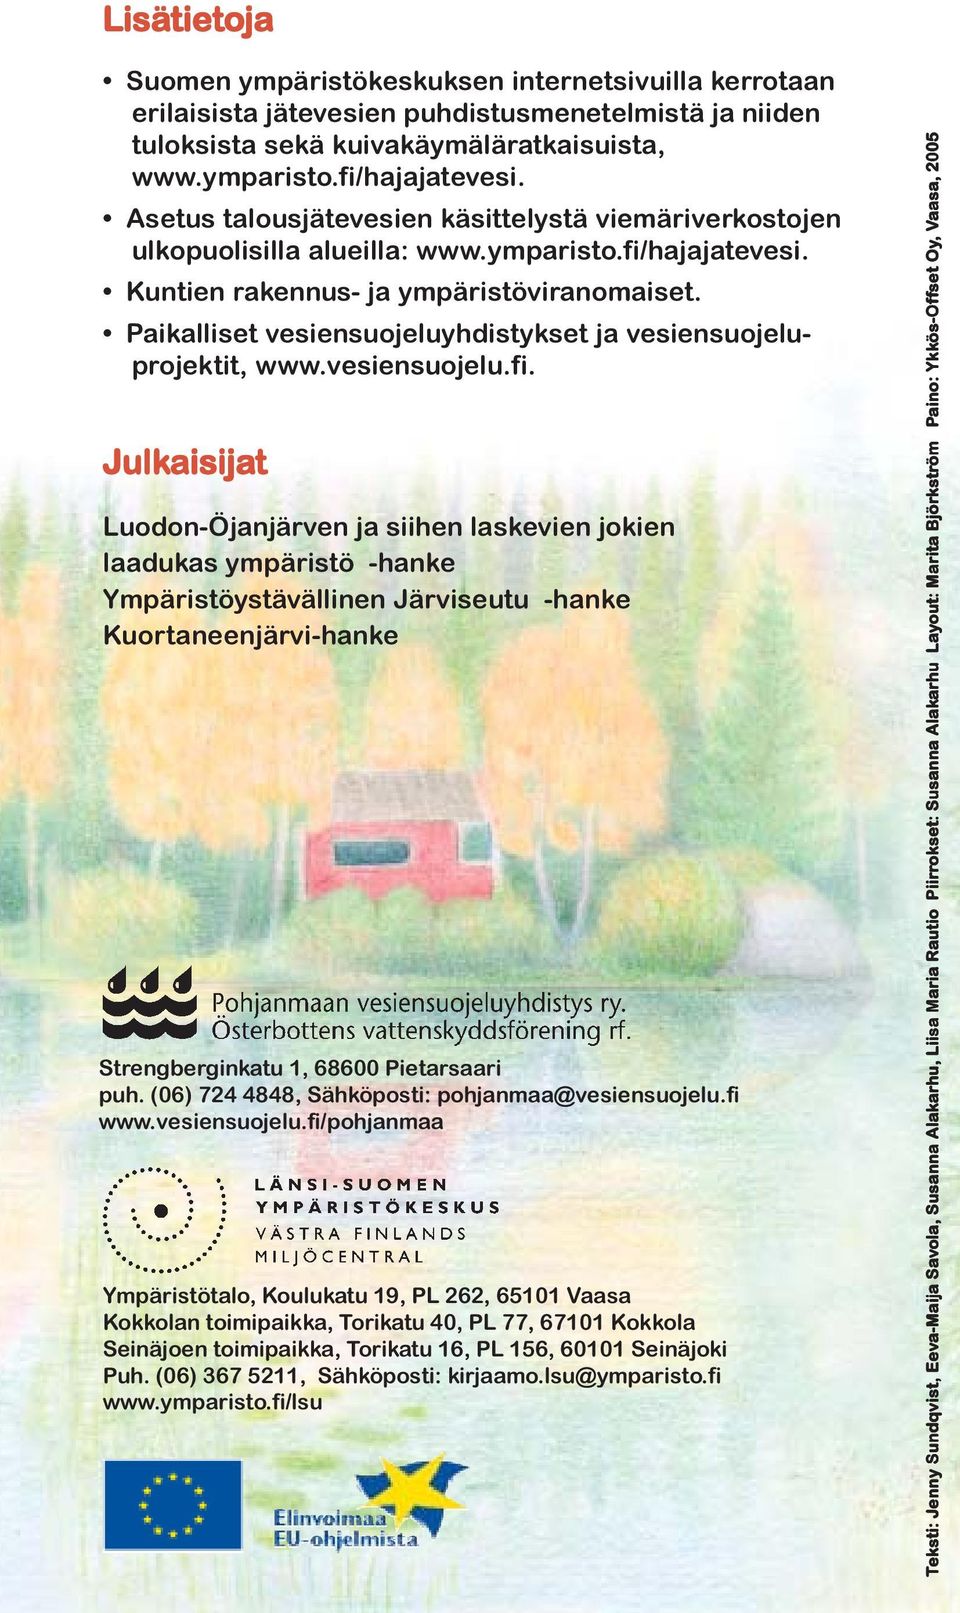 Paikalliset vesiensuojeluyhdistykset ja vesiensuojeluprojektit, www.vesiensuojelu.fi.